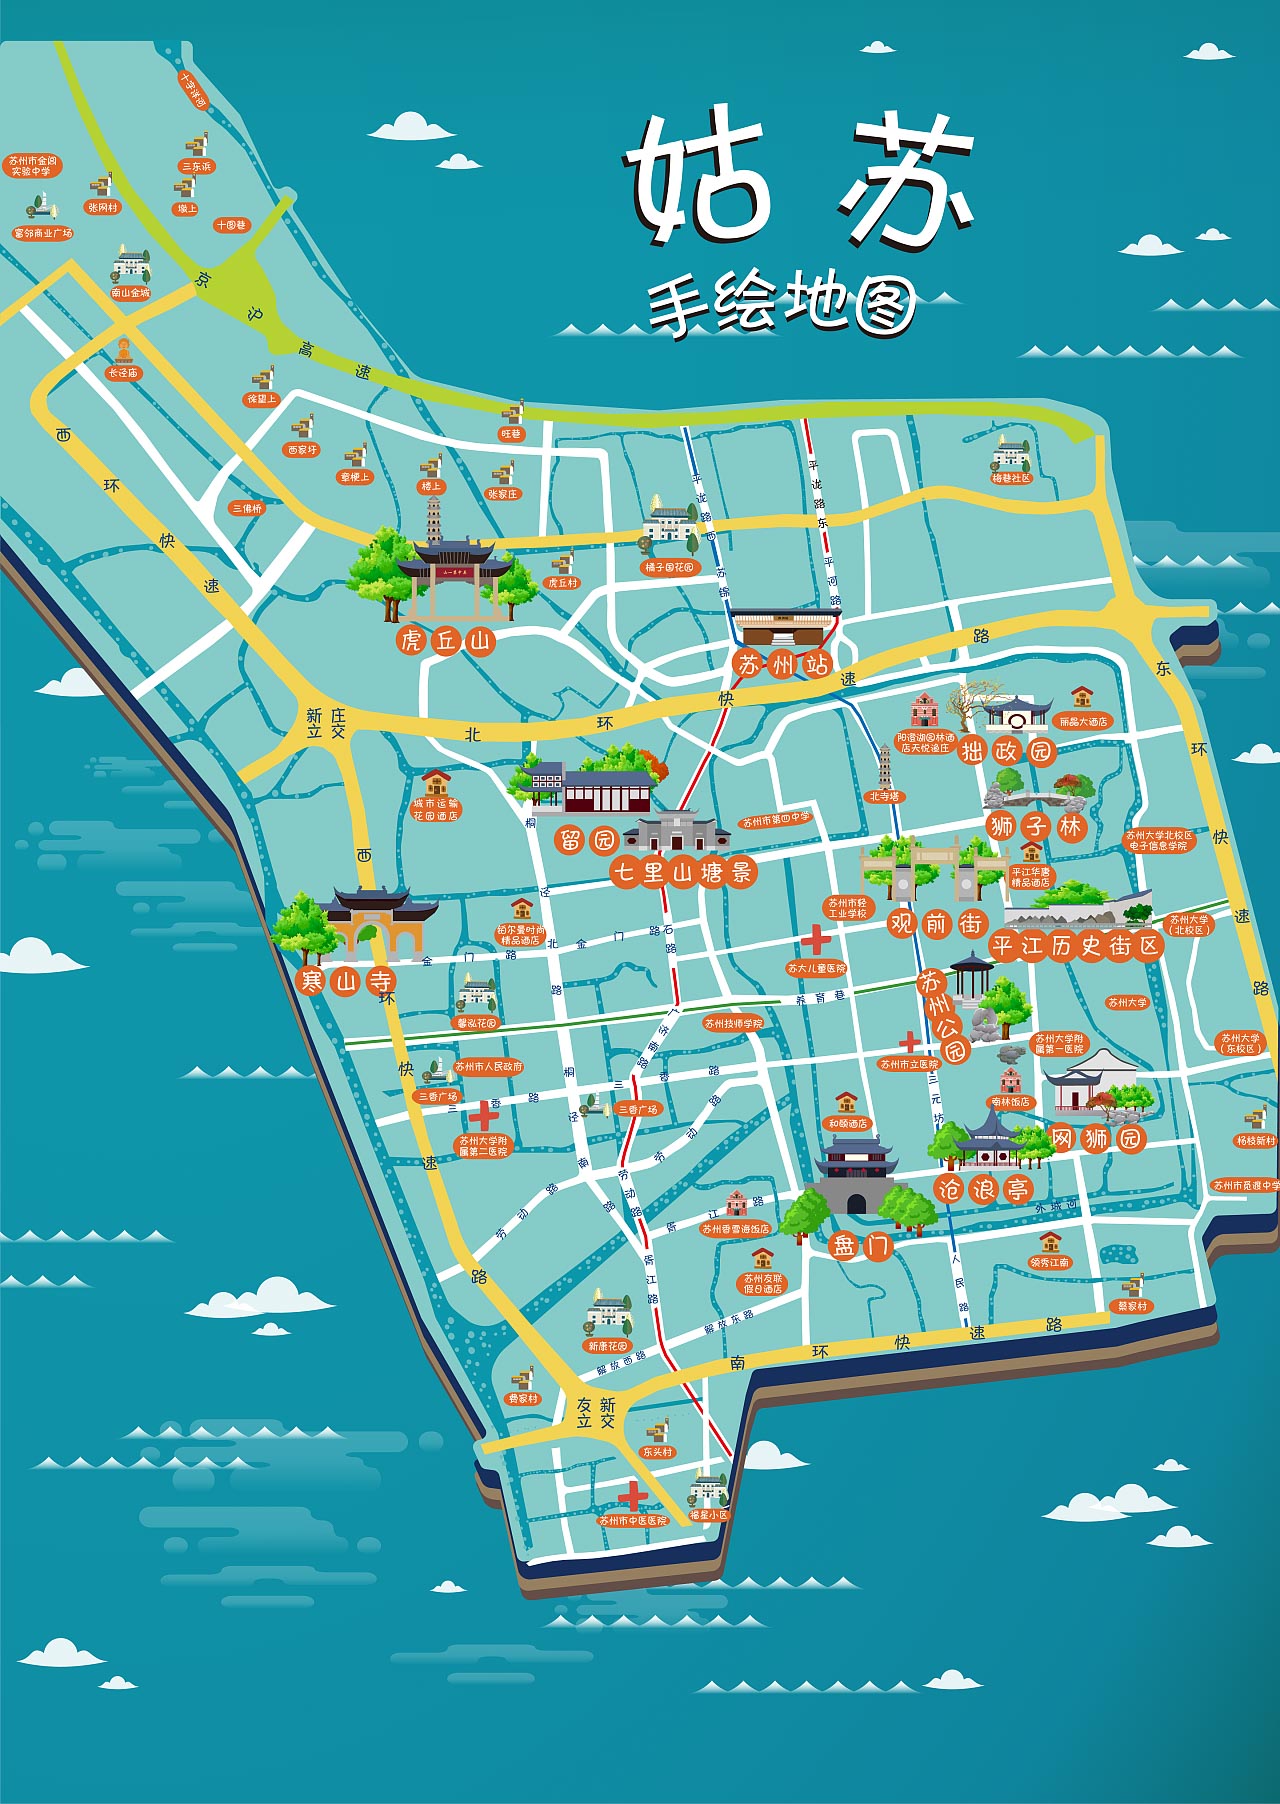 板桥镇手绘地图景区的文化宝藏